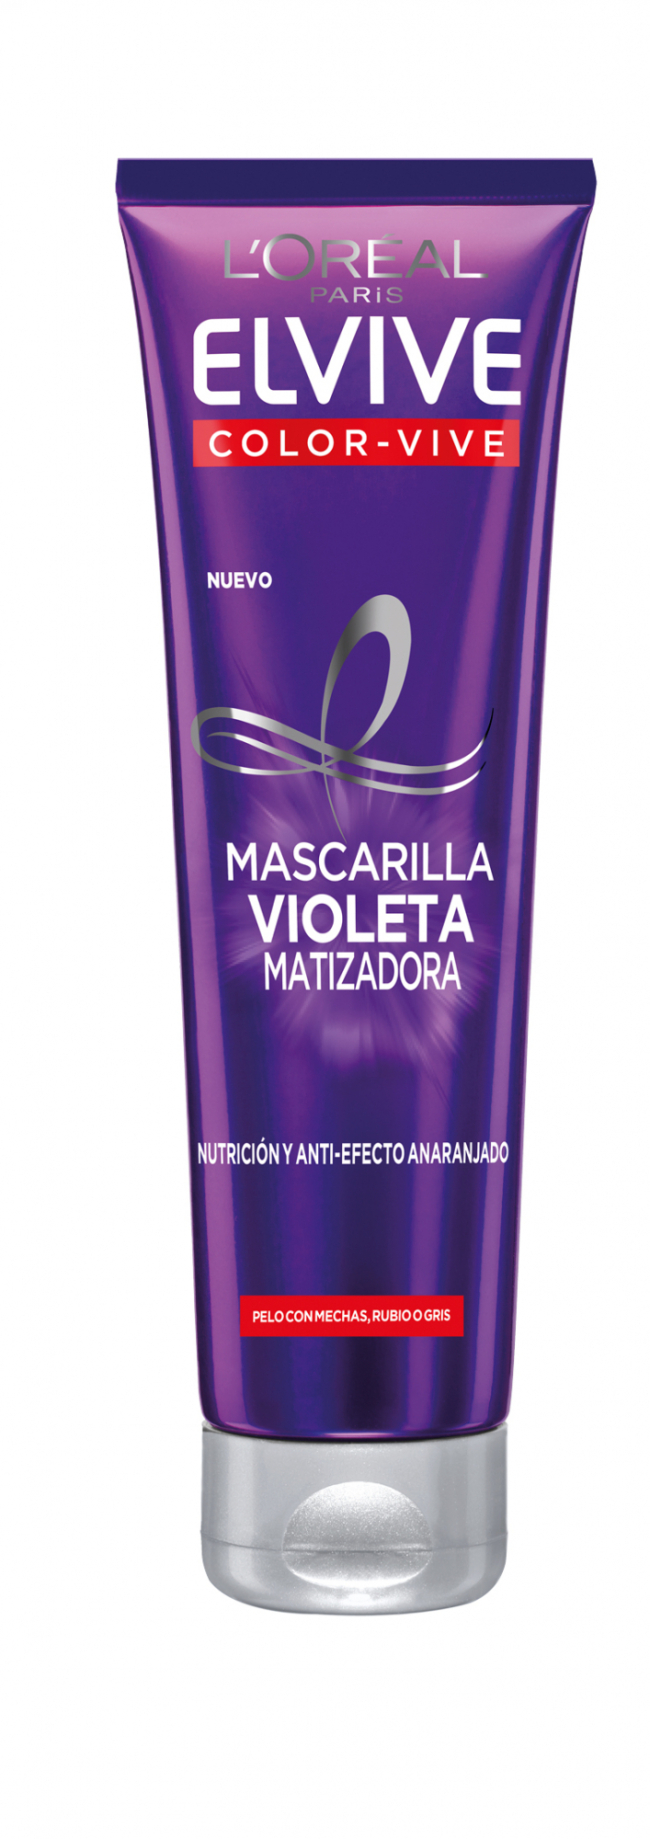 Mascarilla Violeta Matizadora, de L'Oréal Paris (4,99 €).